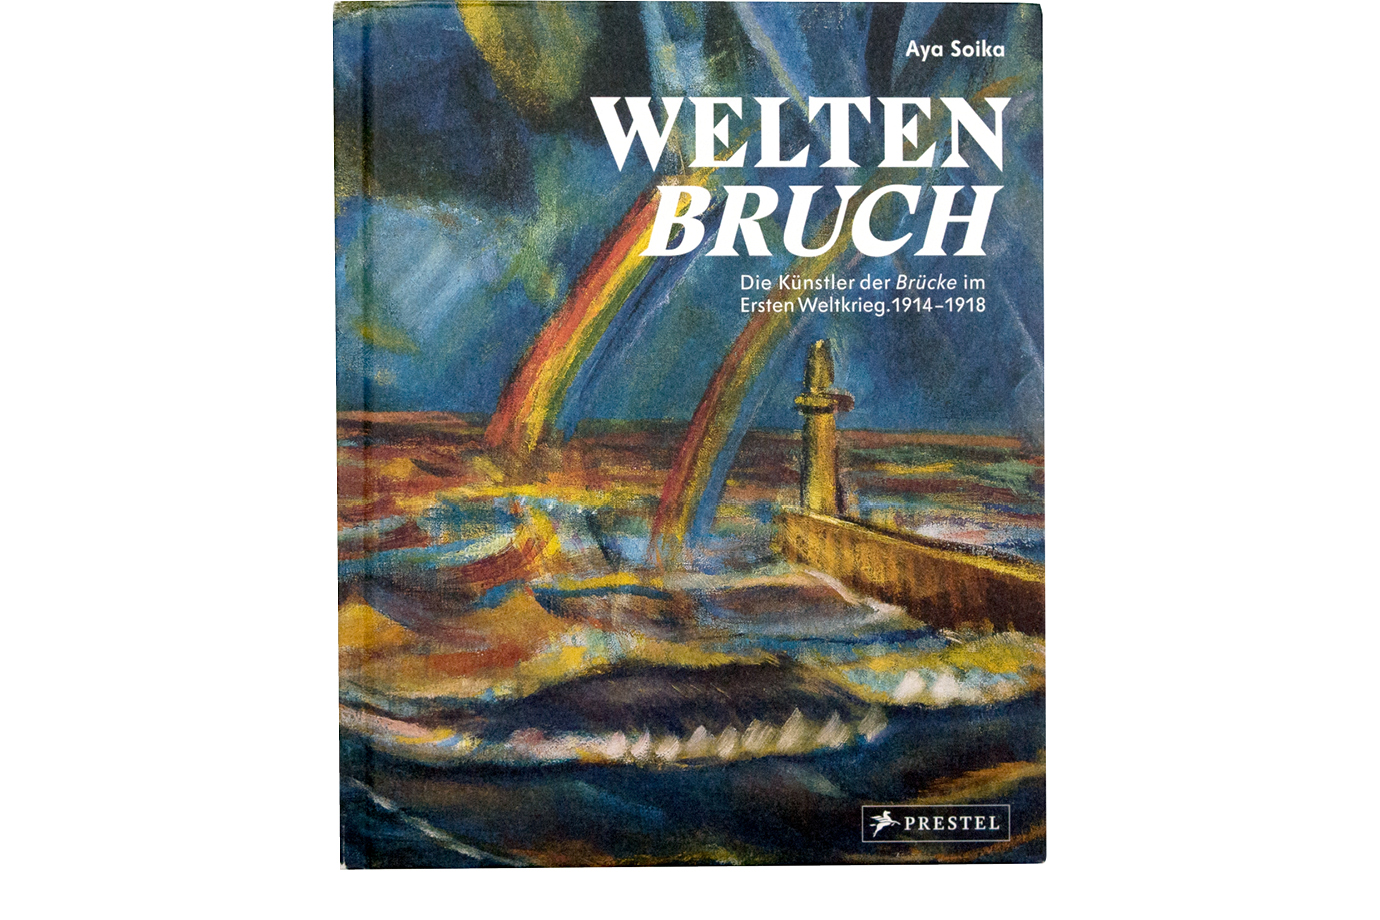 https://e-o-t.de/wordpress/wp-content/uploads/2017/06/2014_eot-Weltenbruch-Book-.jpg